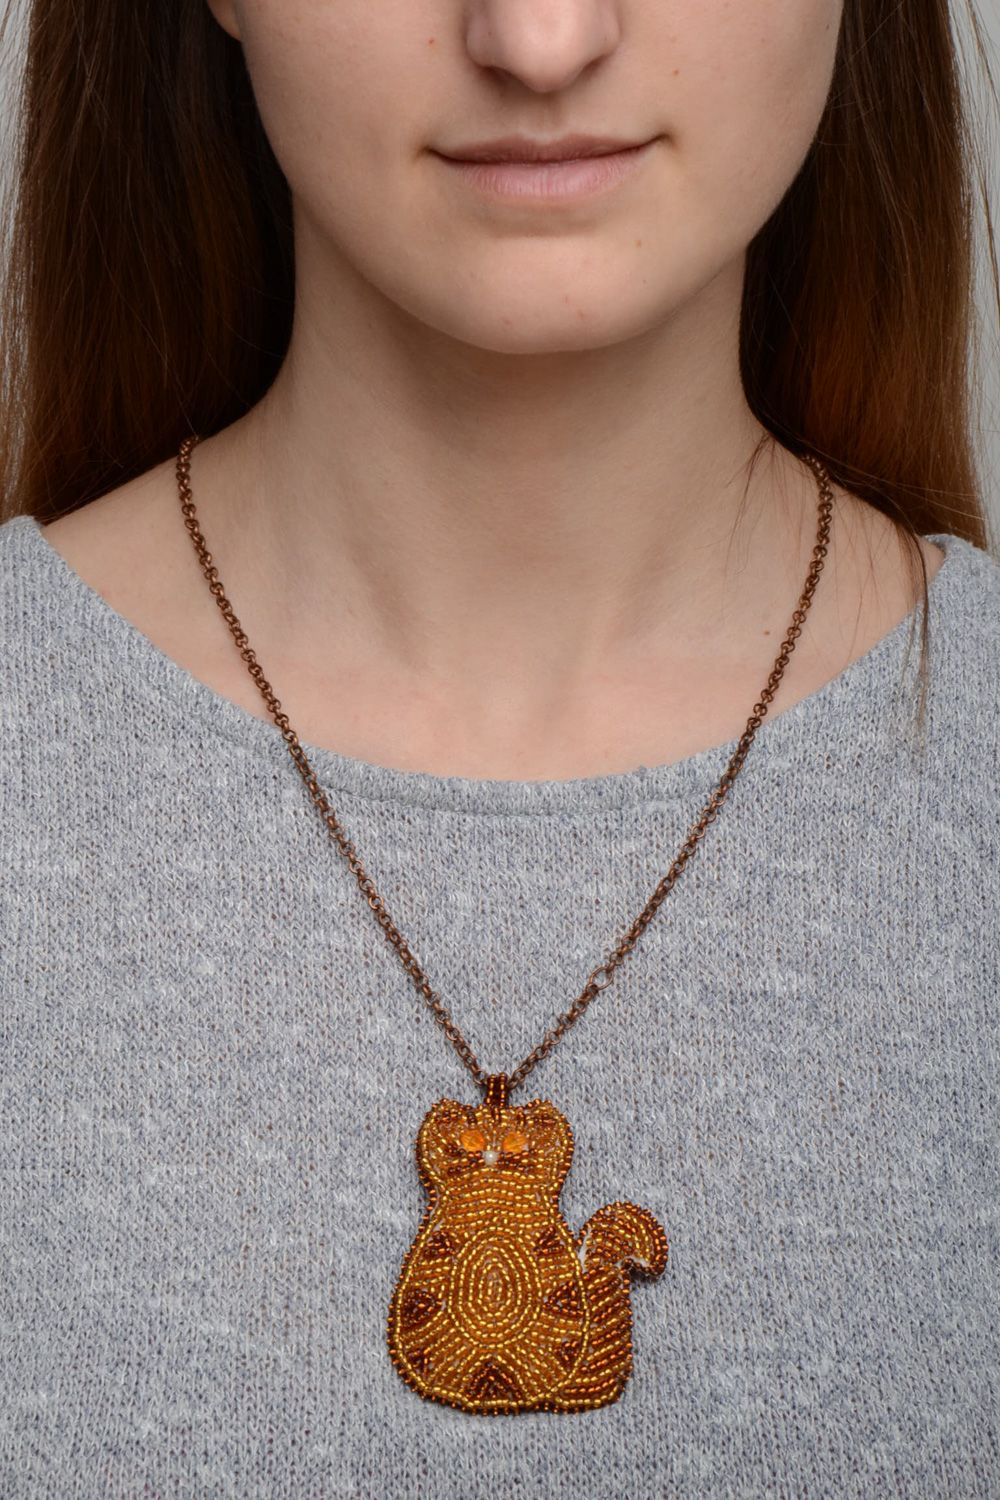 Handmade designer beaded neck pendant on long chain in the shape of cat photo 1